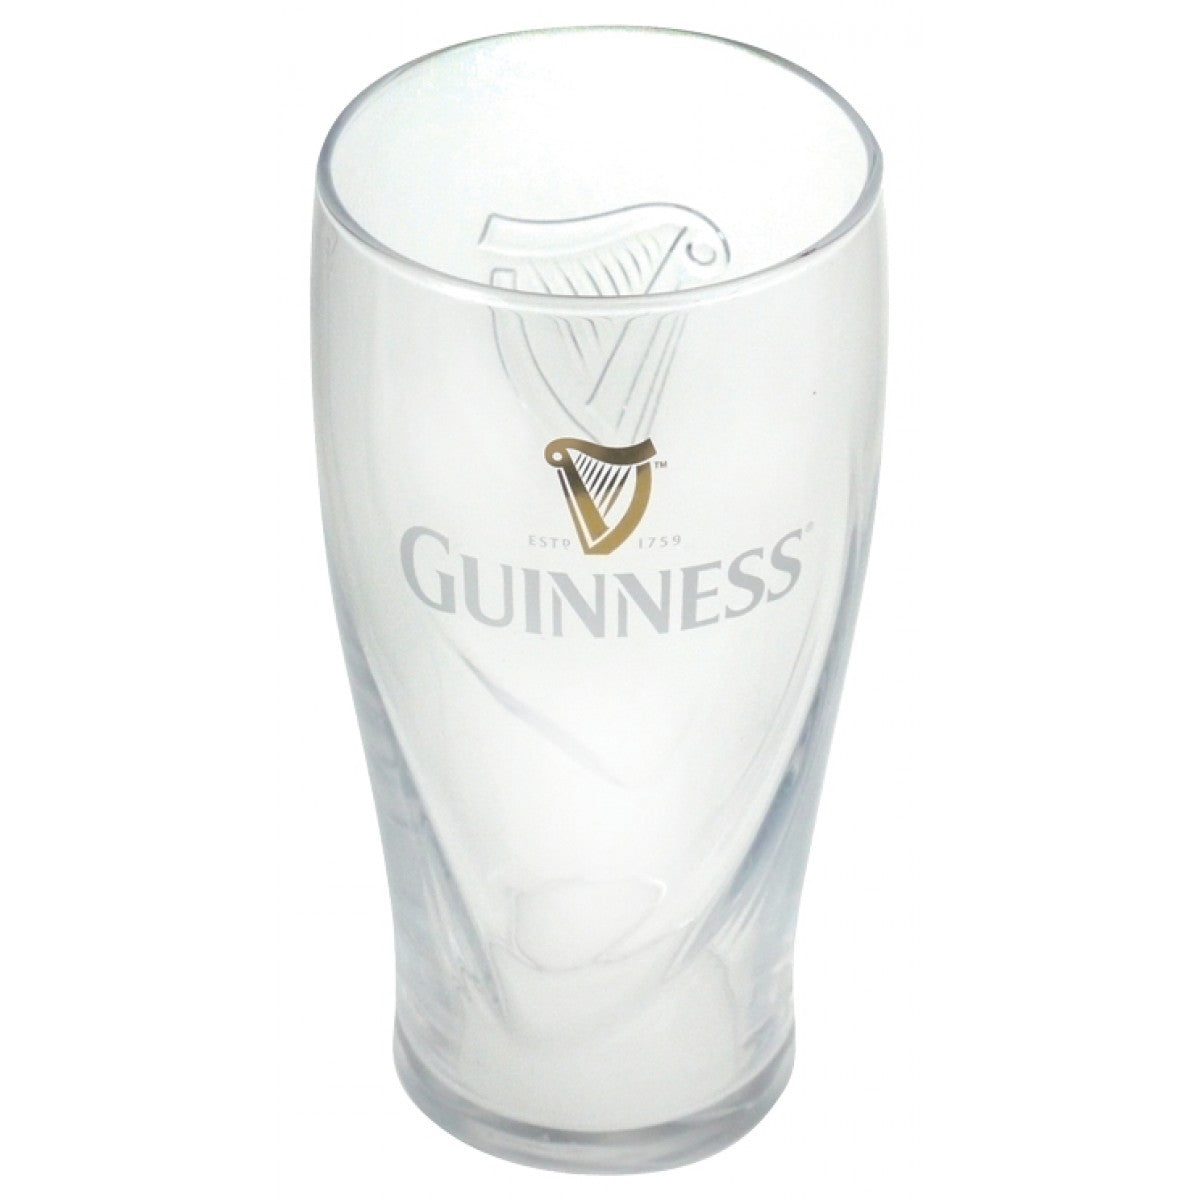 Guinness 20 oz Gravity Pint Glass